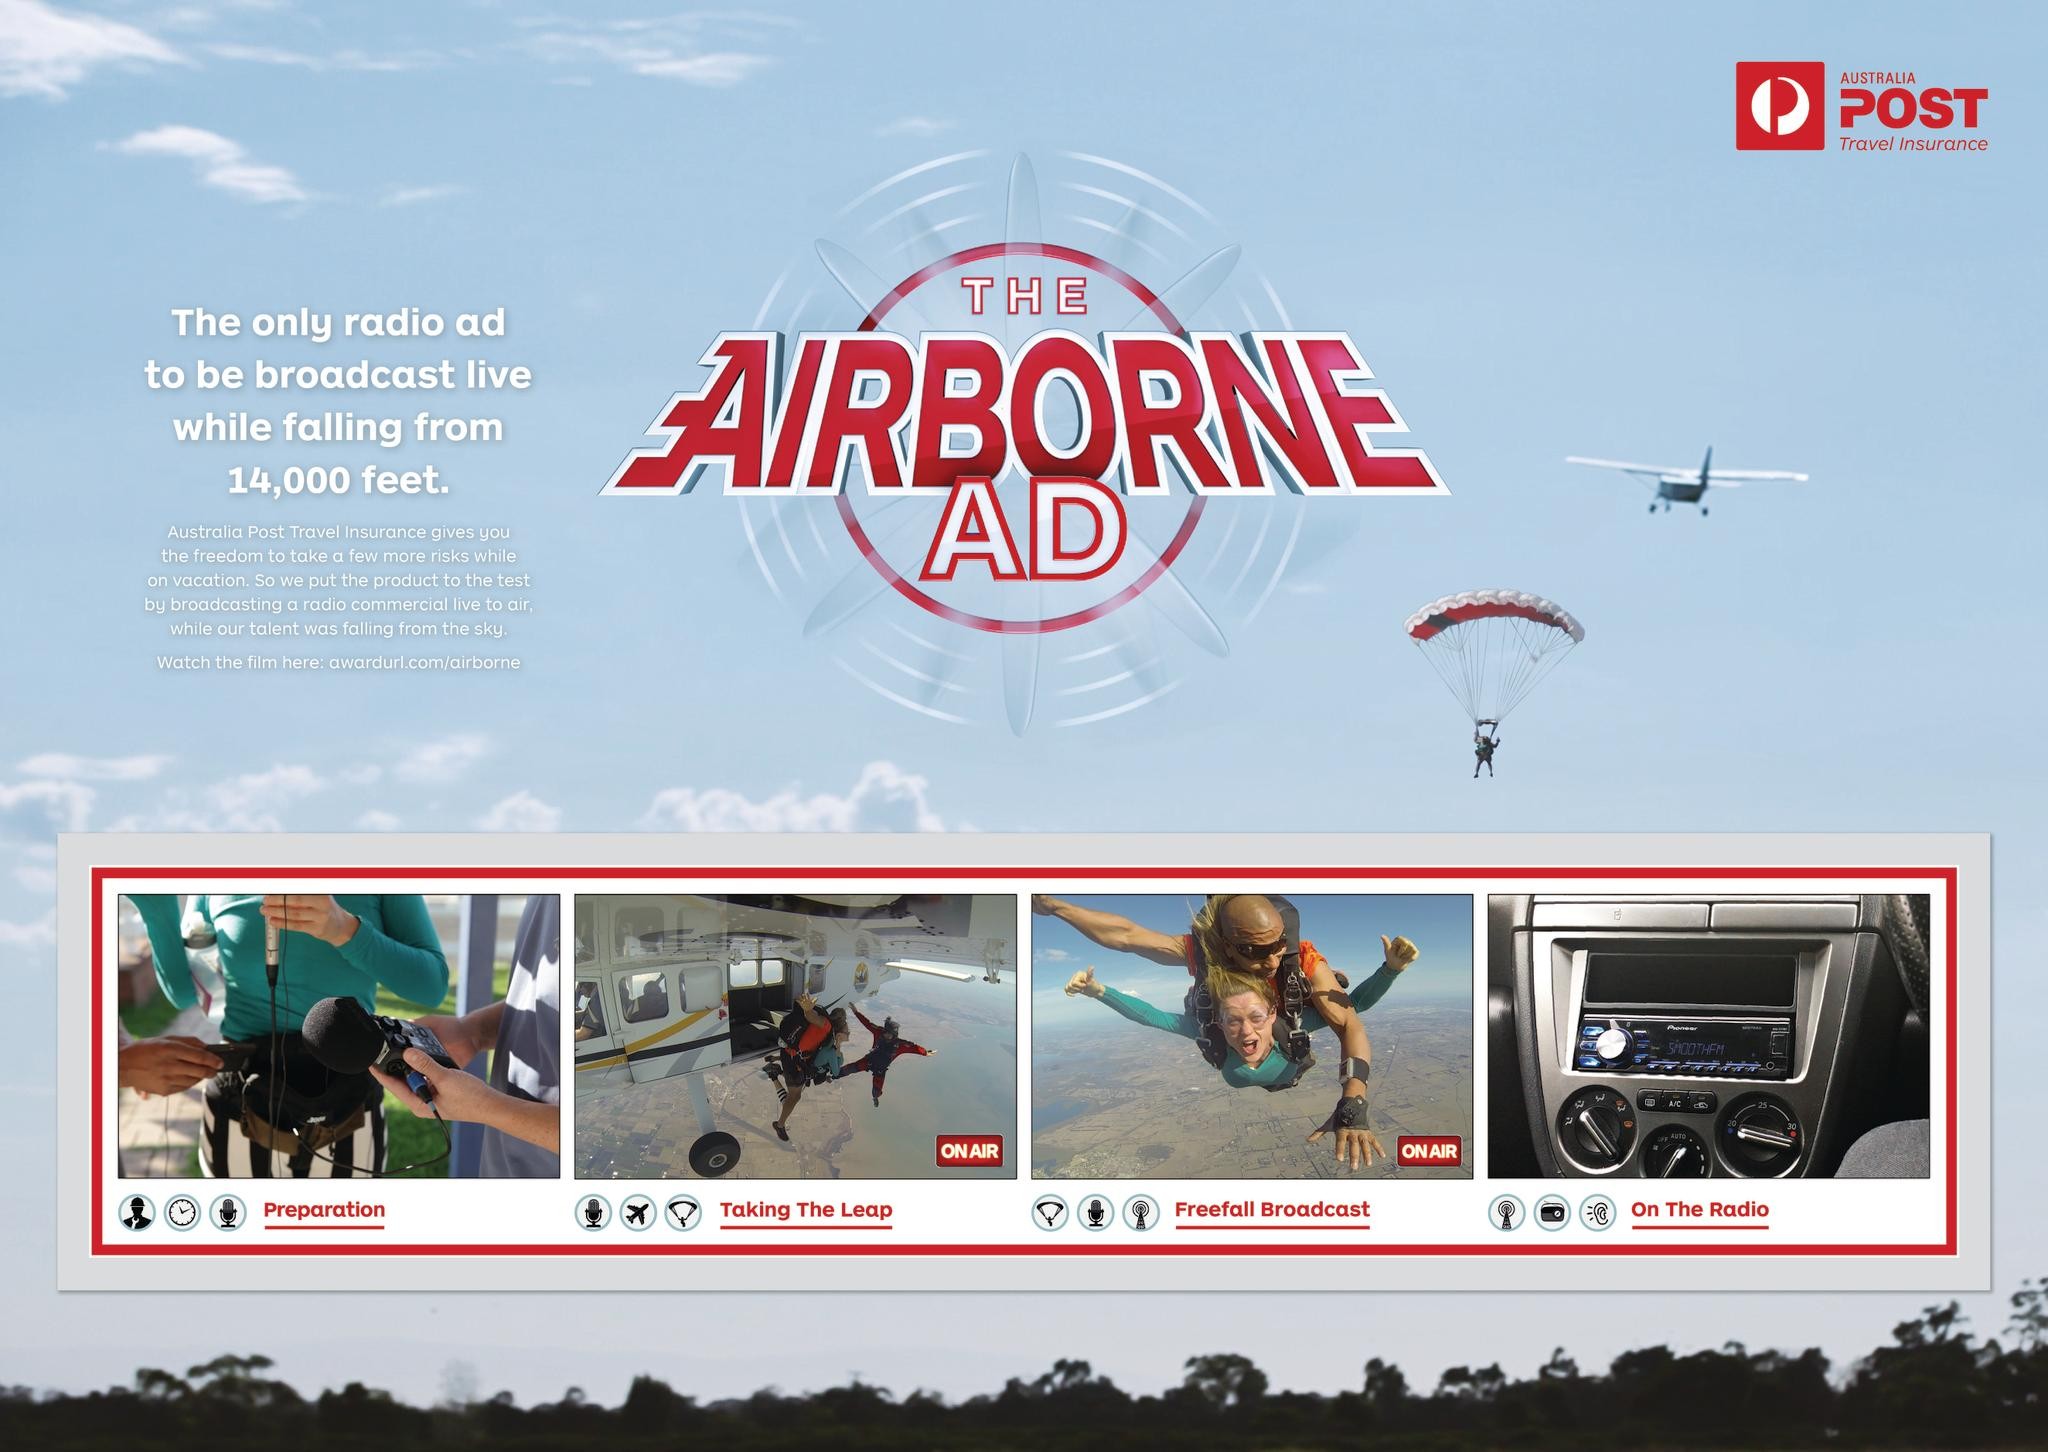 The Airborne Ad